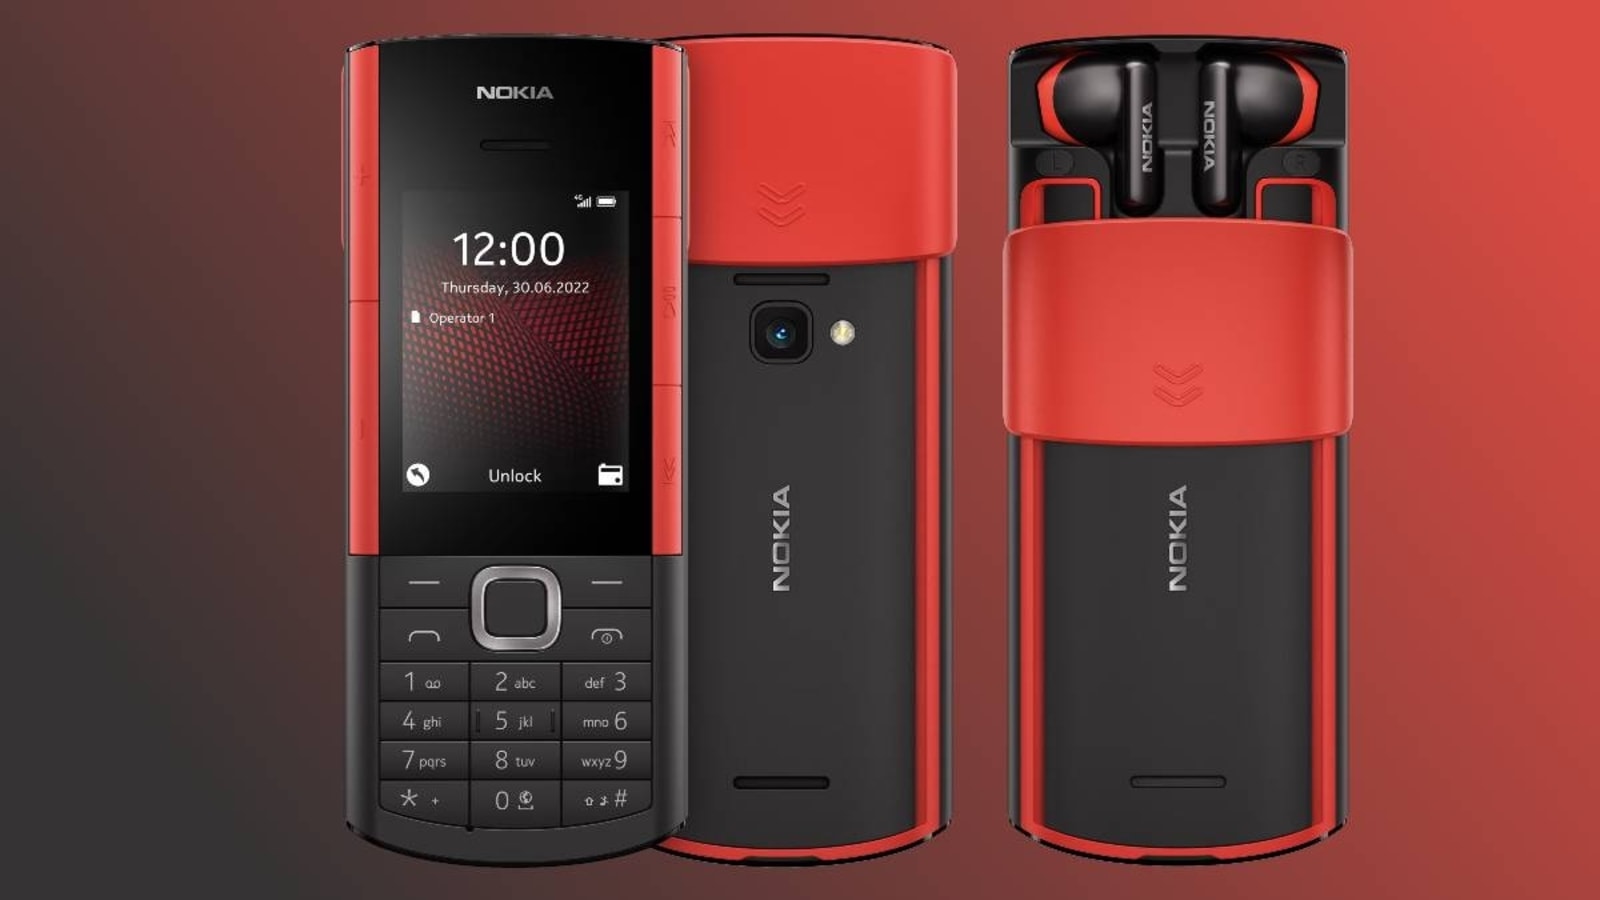 Nokia 5130 XpressMusic review: Nokia 5130 XpressMusic - CNET